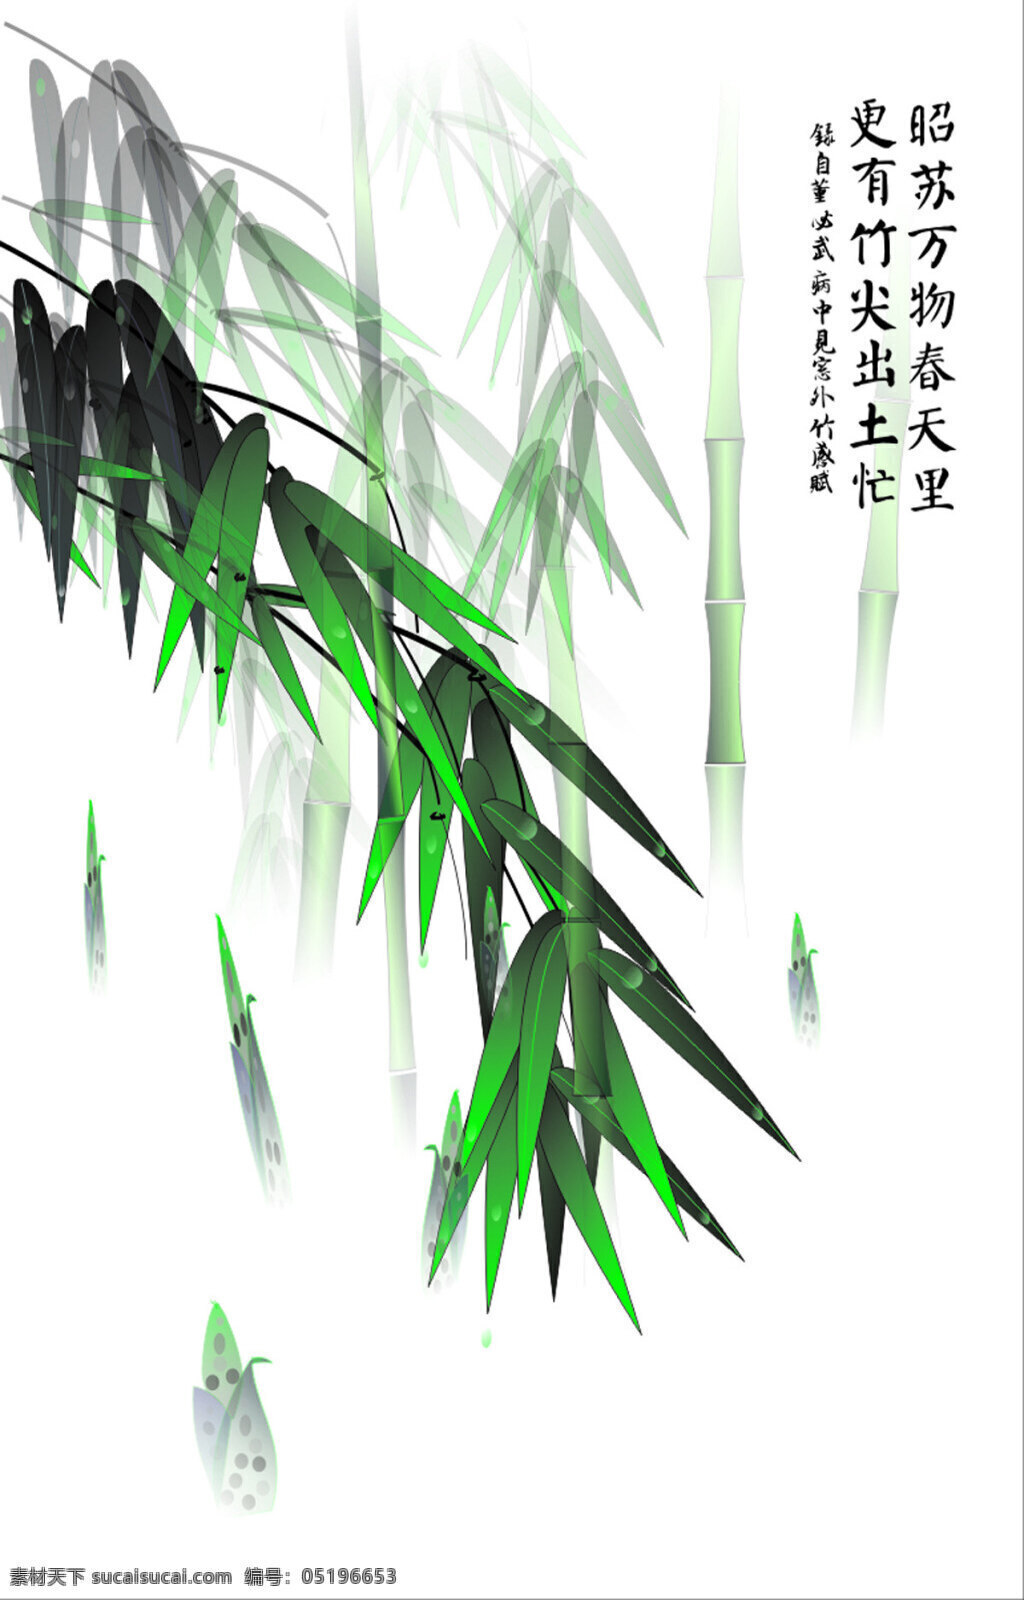 中国 风 高风亮节 雨 竹装饰 画 水彩 花卉 草木绿 水墨 中国风 装饰画